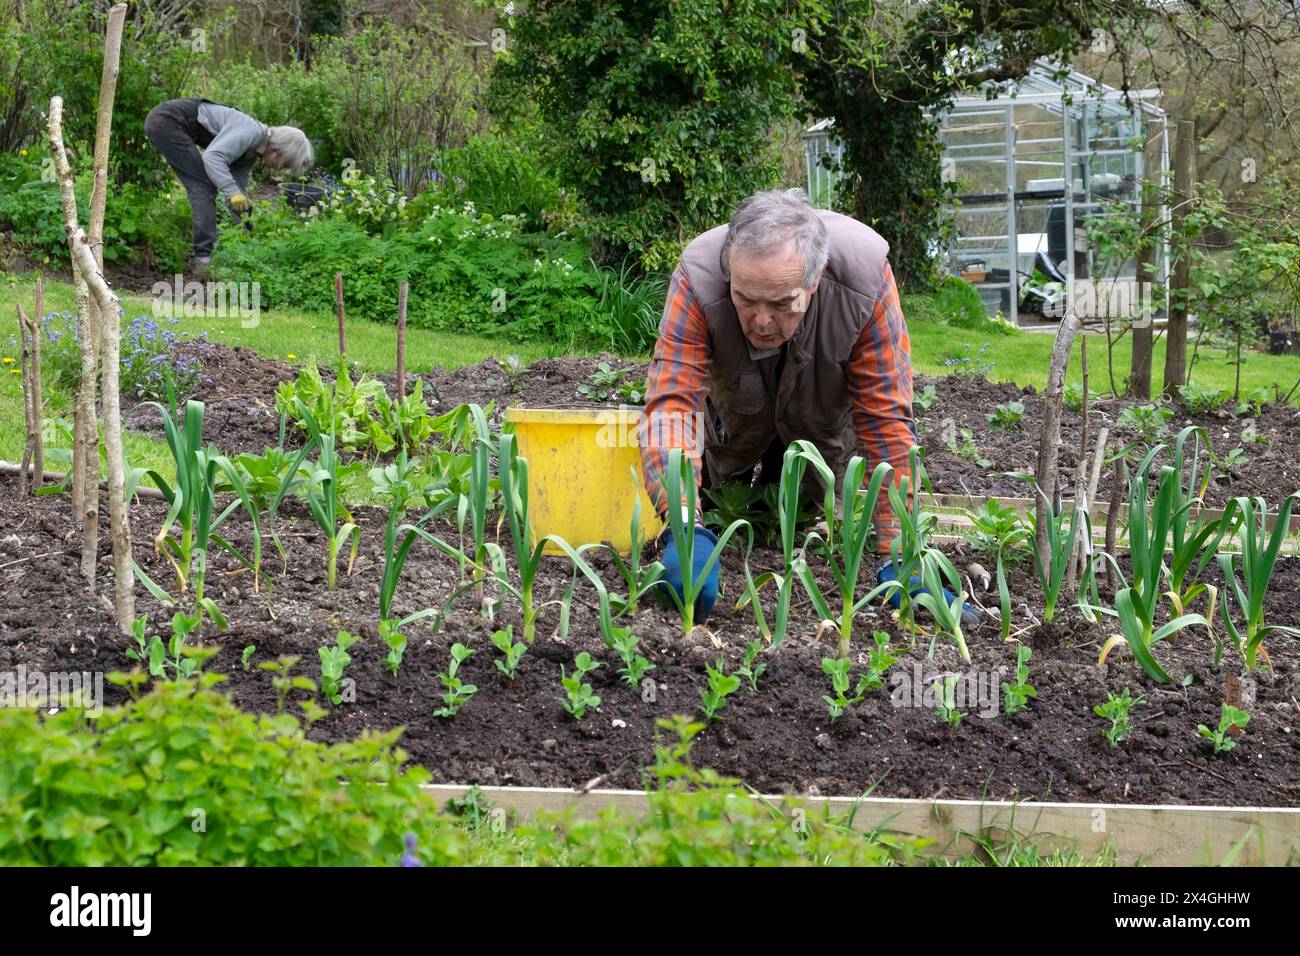 Ältere Menschen Mann Senior kniend im Garten Gartenarbeit arbeiten Unkraut erhöhtes Knoblauchbett April Frühling Wales Großbritannien KATHY DEWITT Stockfoto